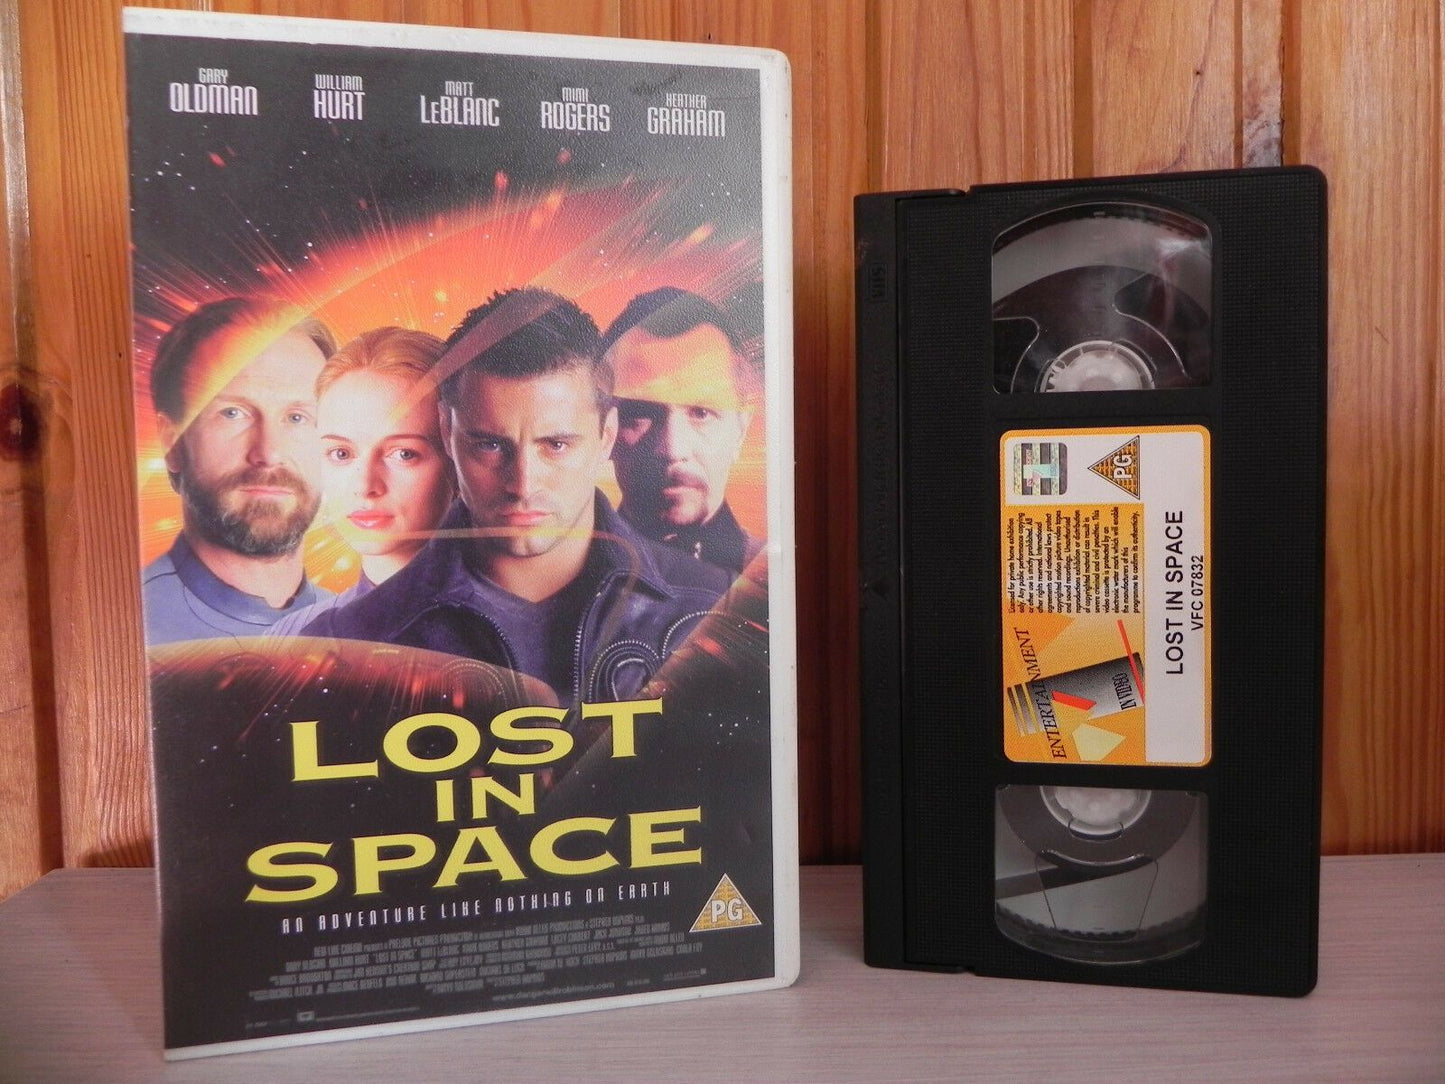 Lost In Space - Matt Le Blanc - "Joey From Friends" - Gary Oldman - Sci-Fi - VHS-